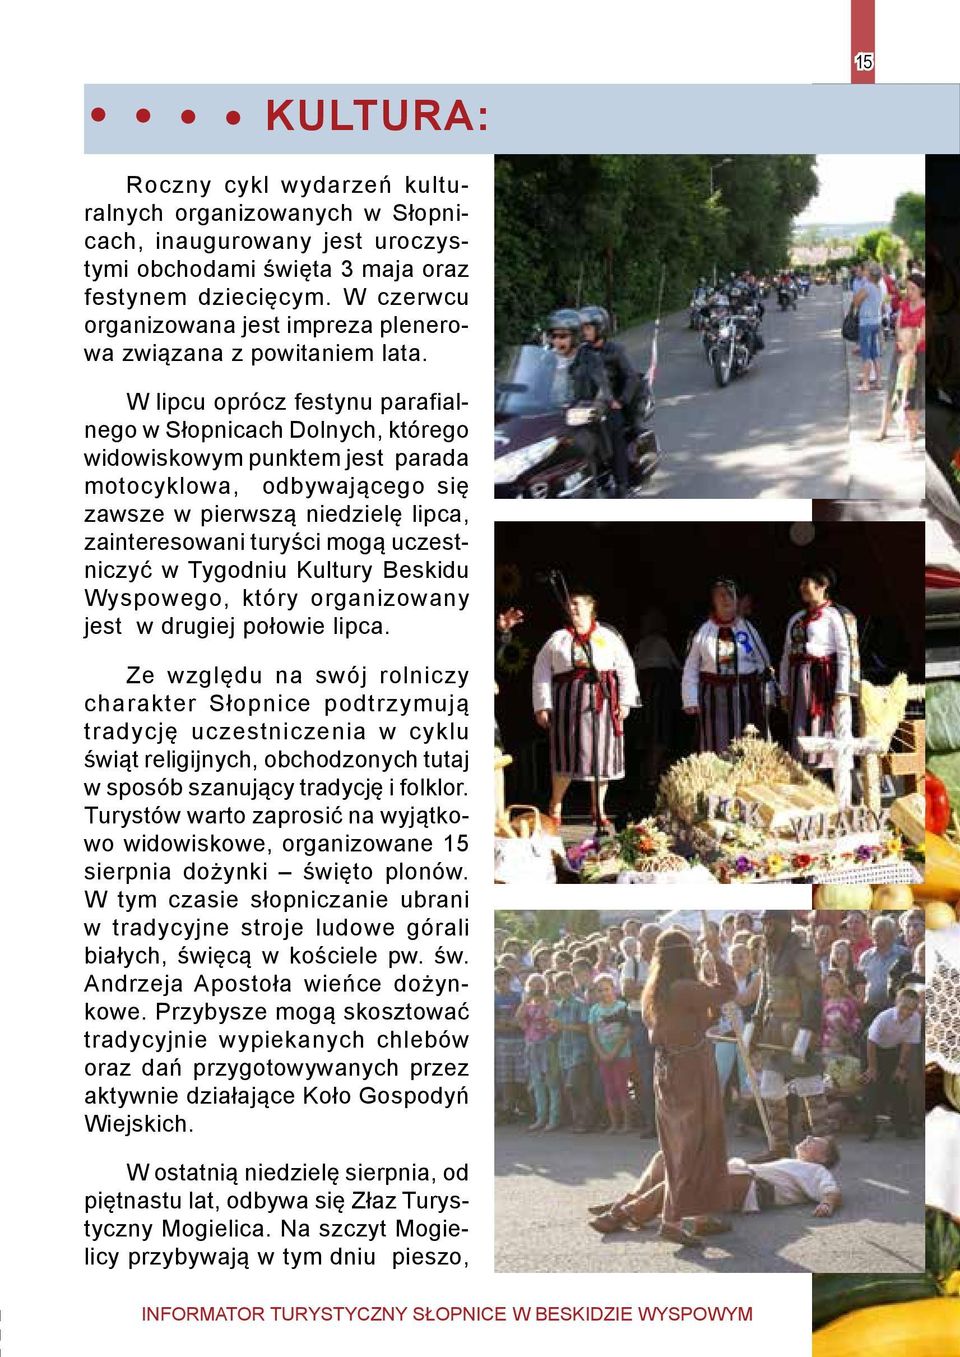 W lipcu oprócz festynu parafialnego w Słopnicach Dolnych, którego widowiskowym punktem jest parada motocyklowa, odbywającego się zawsze w pierwszą niedzielę lipca, zainteresowani turyści mogą